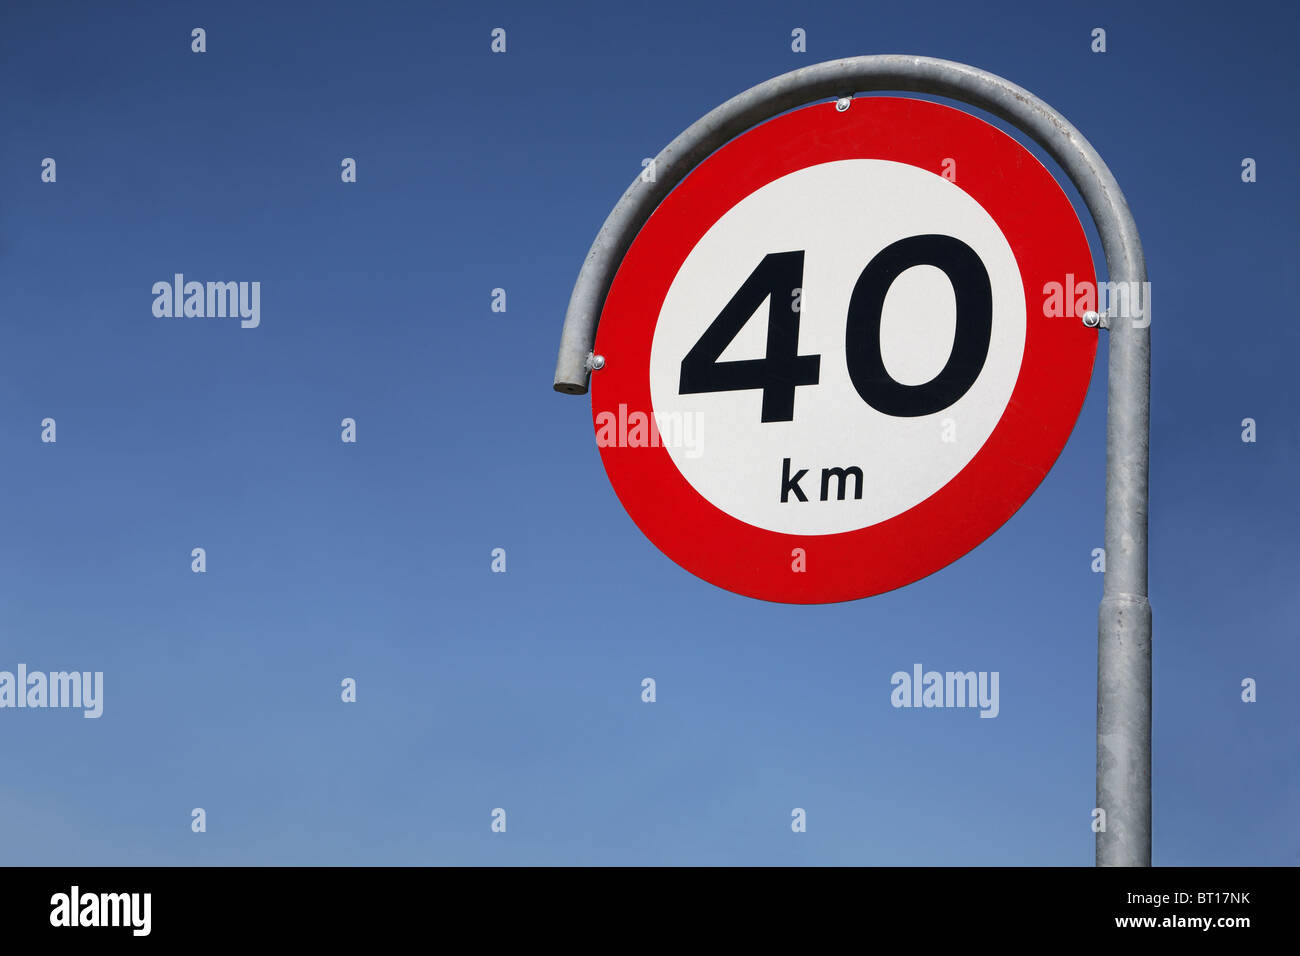 Límite de velocidad a 40km de señal de tráfico Foto de stock